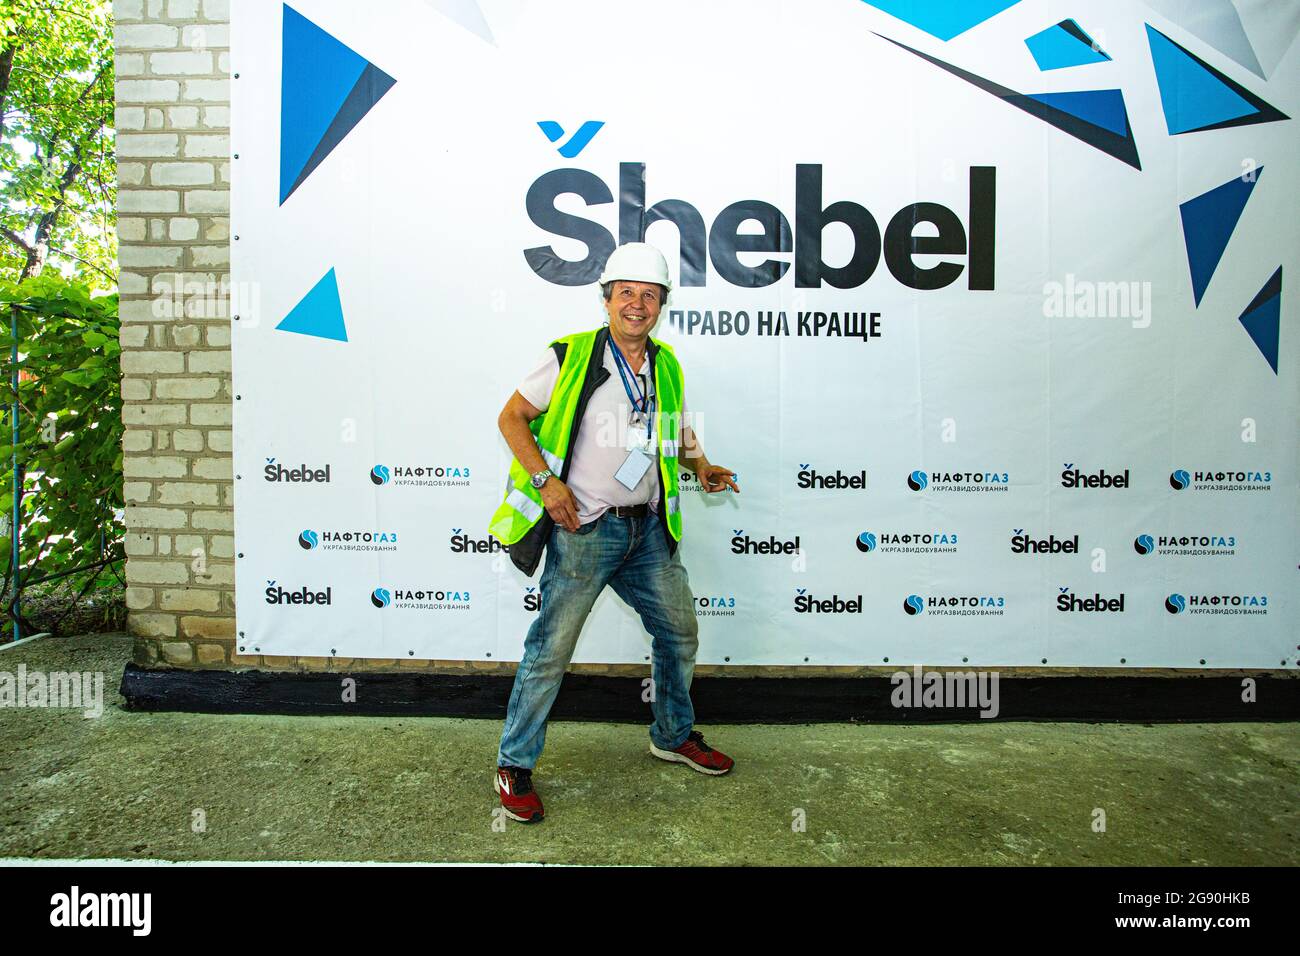 El reportero y fotógrafo ucraniano posan para la cámara contra la pared con la marca local de gasolina durante un viaje a la refinería de gas Shebelinka. Foto de stock